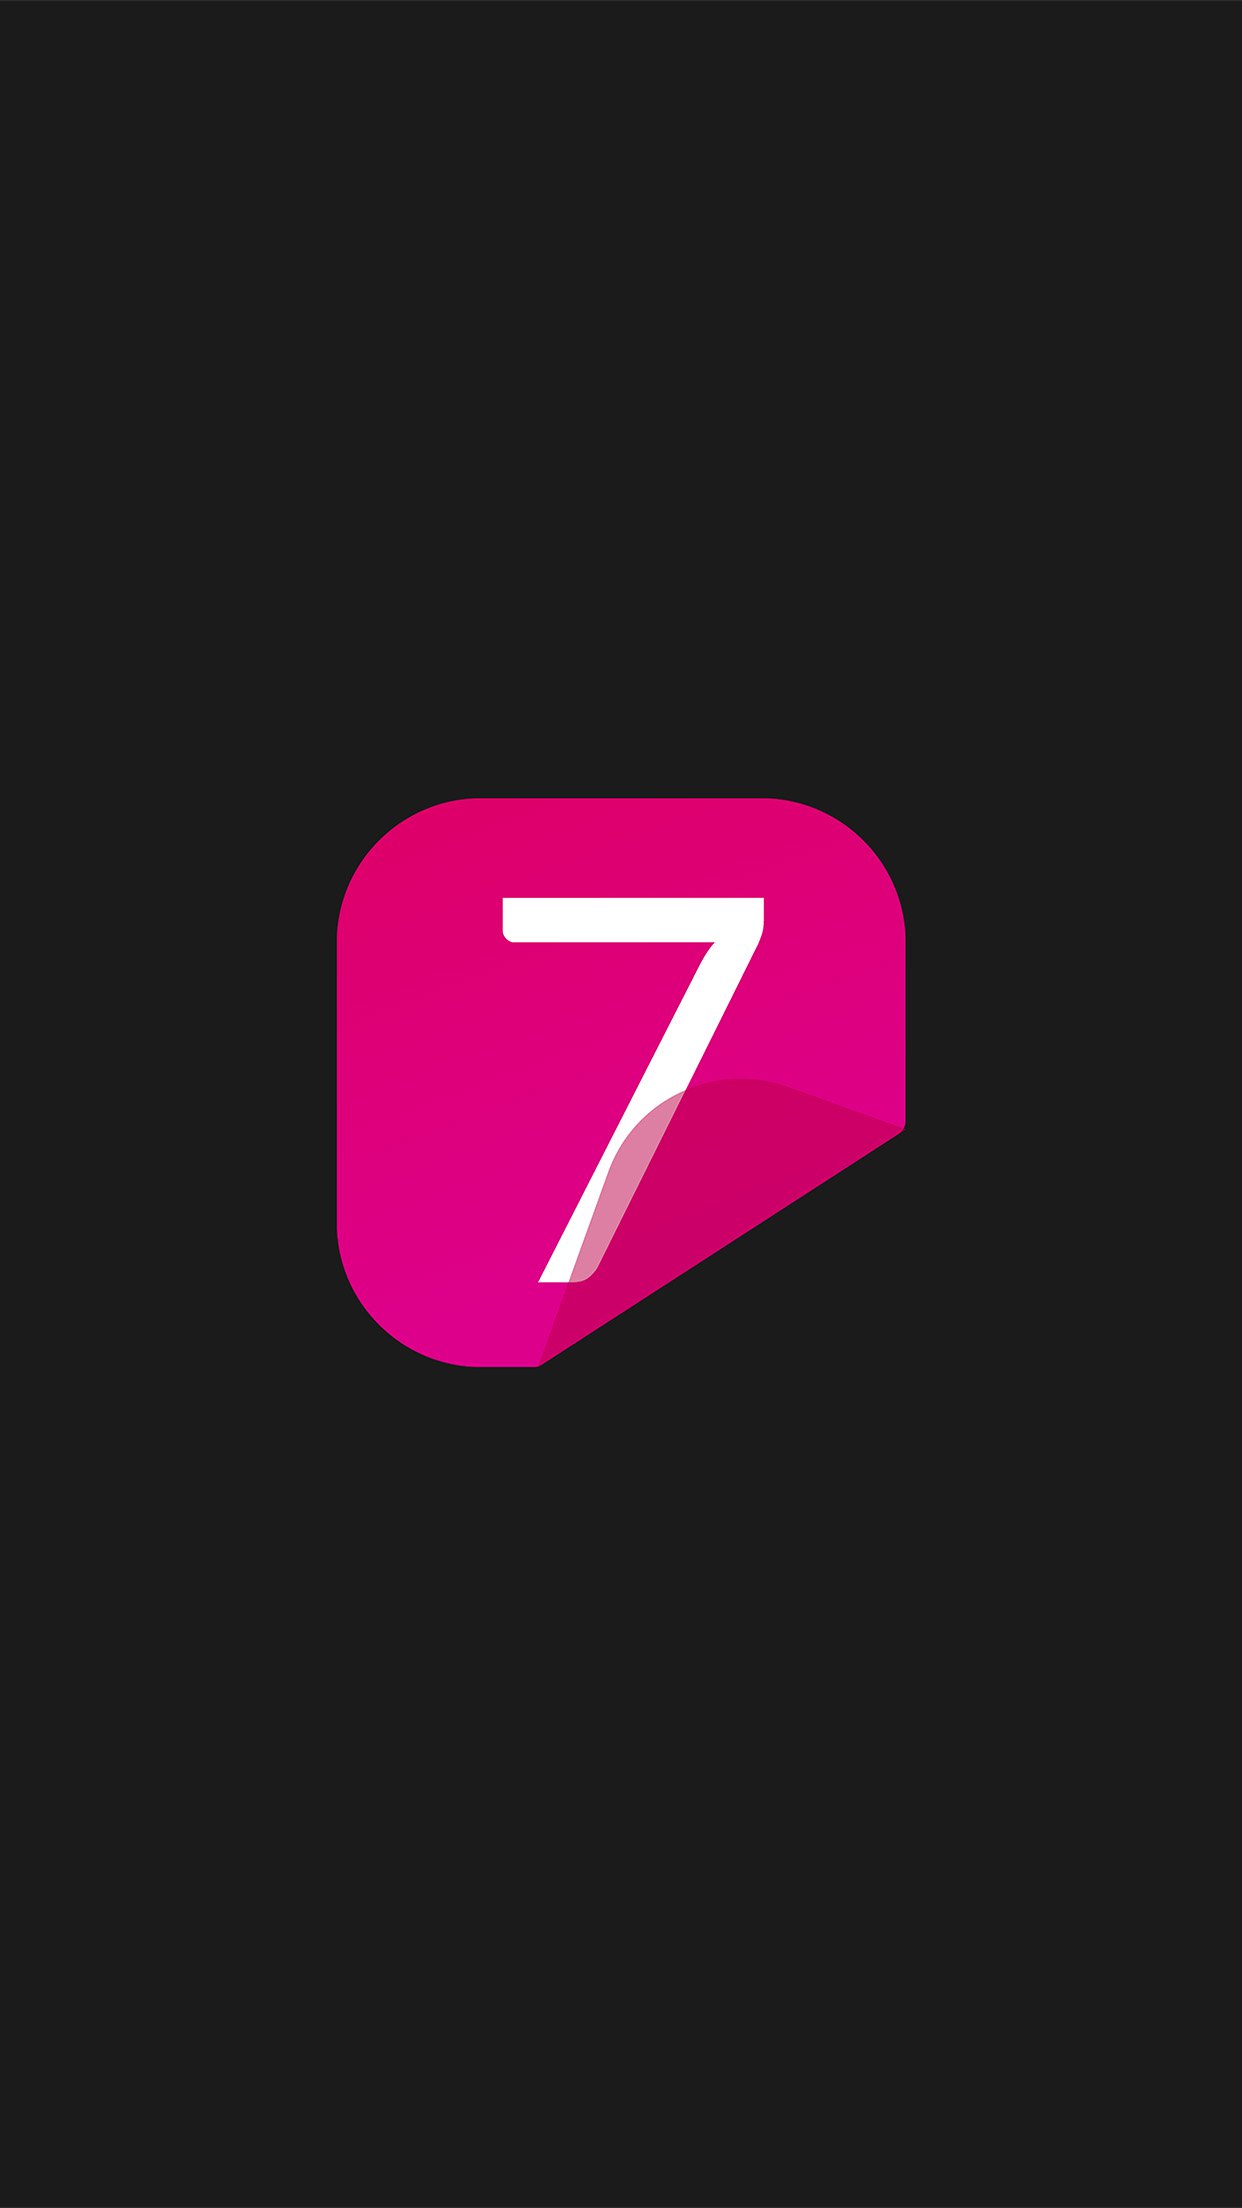 Iphone 7 Logos